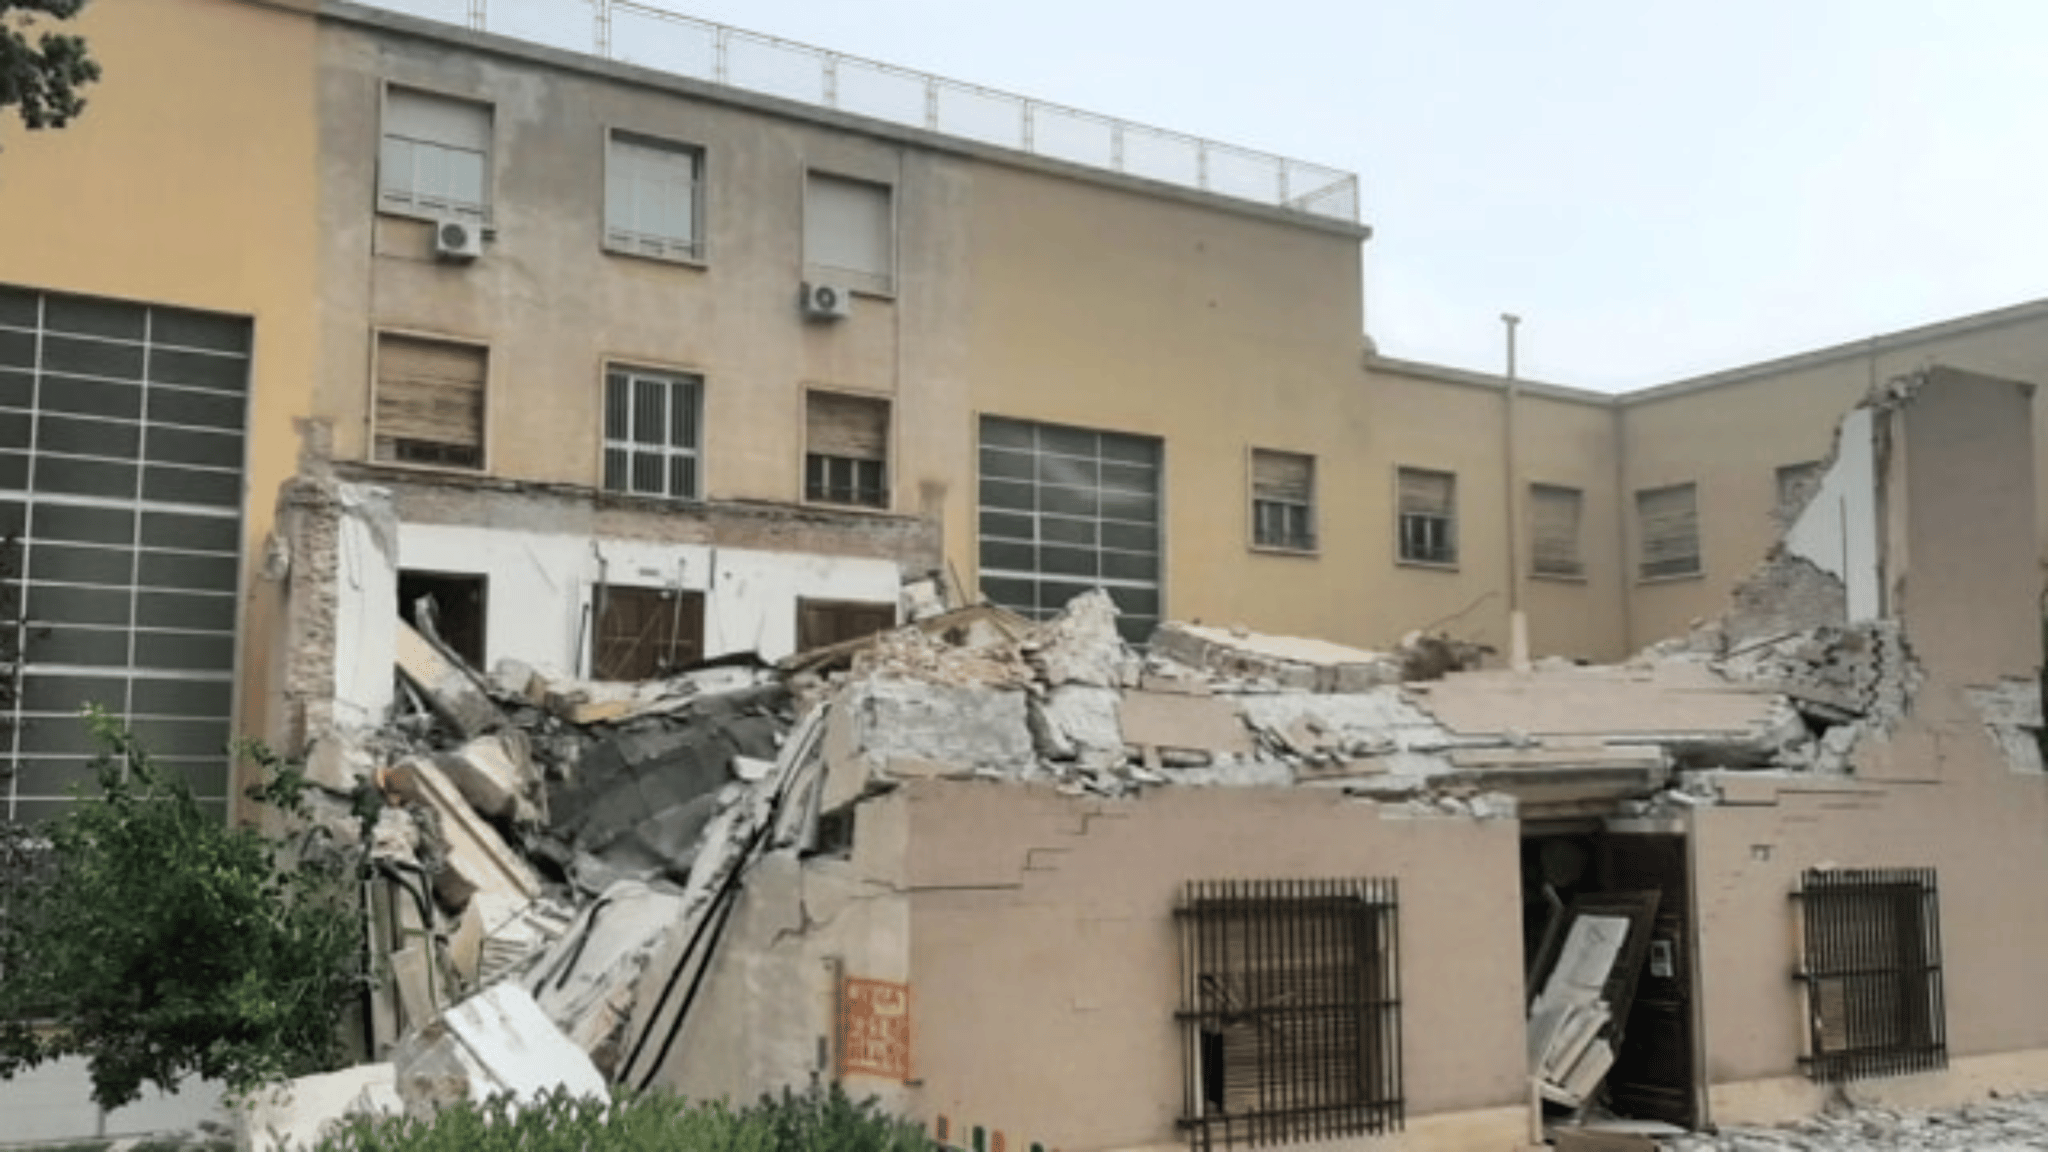 Crollo edificio all’Università di Cagliari. Fortunatamente nessuna vittima. “Evento inaccettabile”